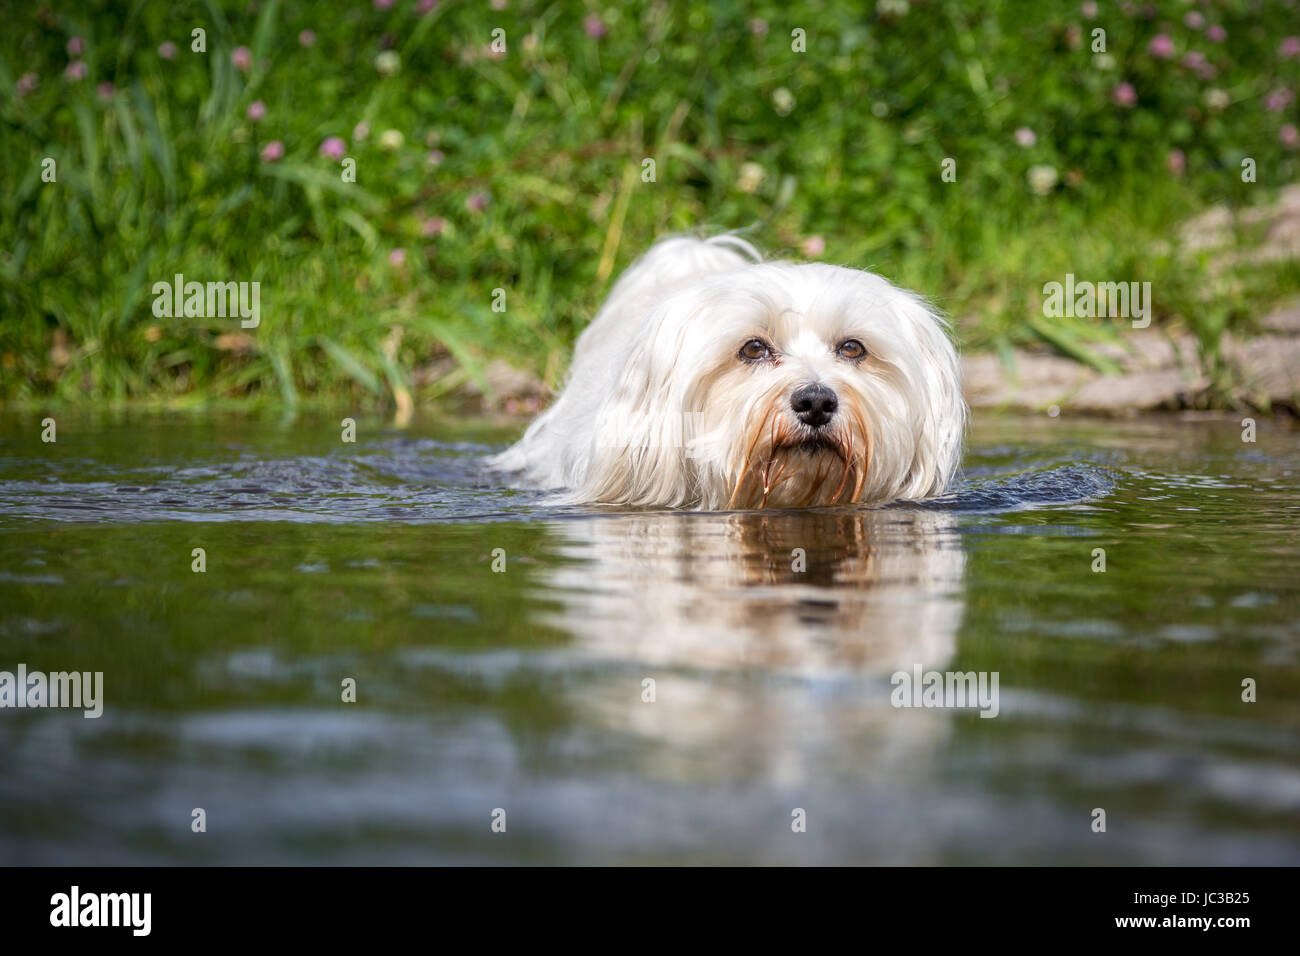 Kleiner Weißer Hund geht durchs Wasser direkt auf den Fotografen zu. Stock Photo